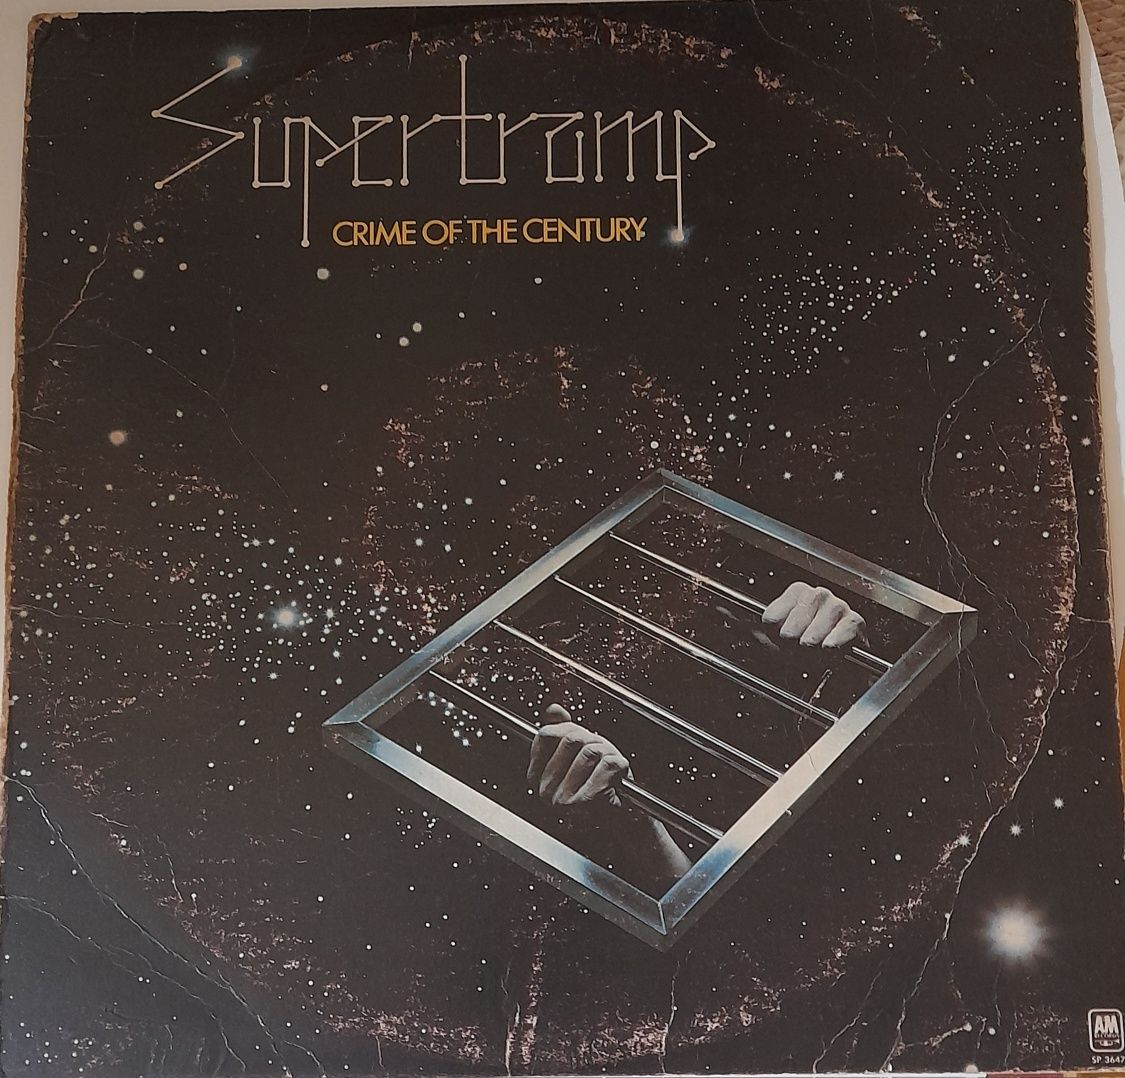 Lp Supertramp - Crime of the Century - 1974